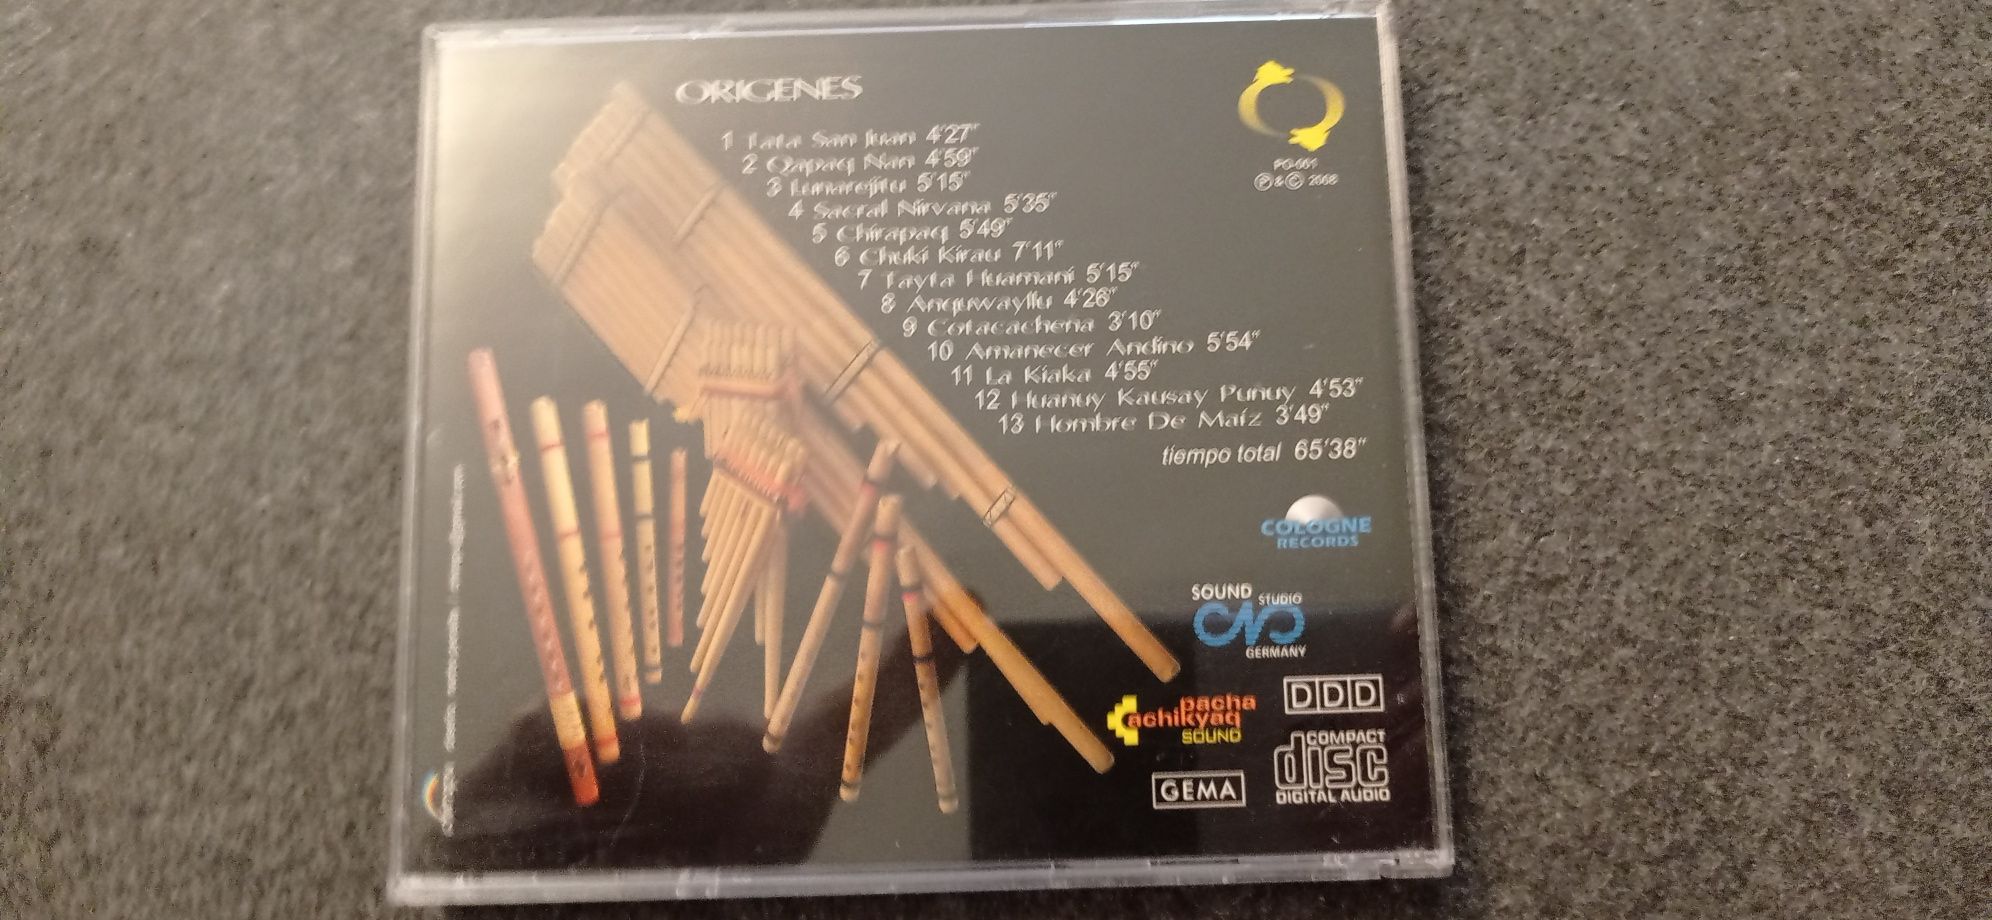 ORIGENES esperitu de los Andes CD